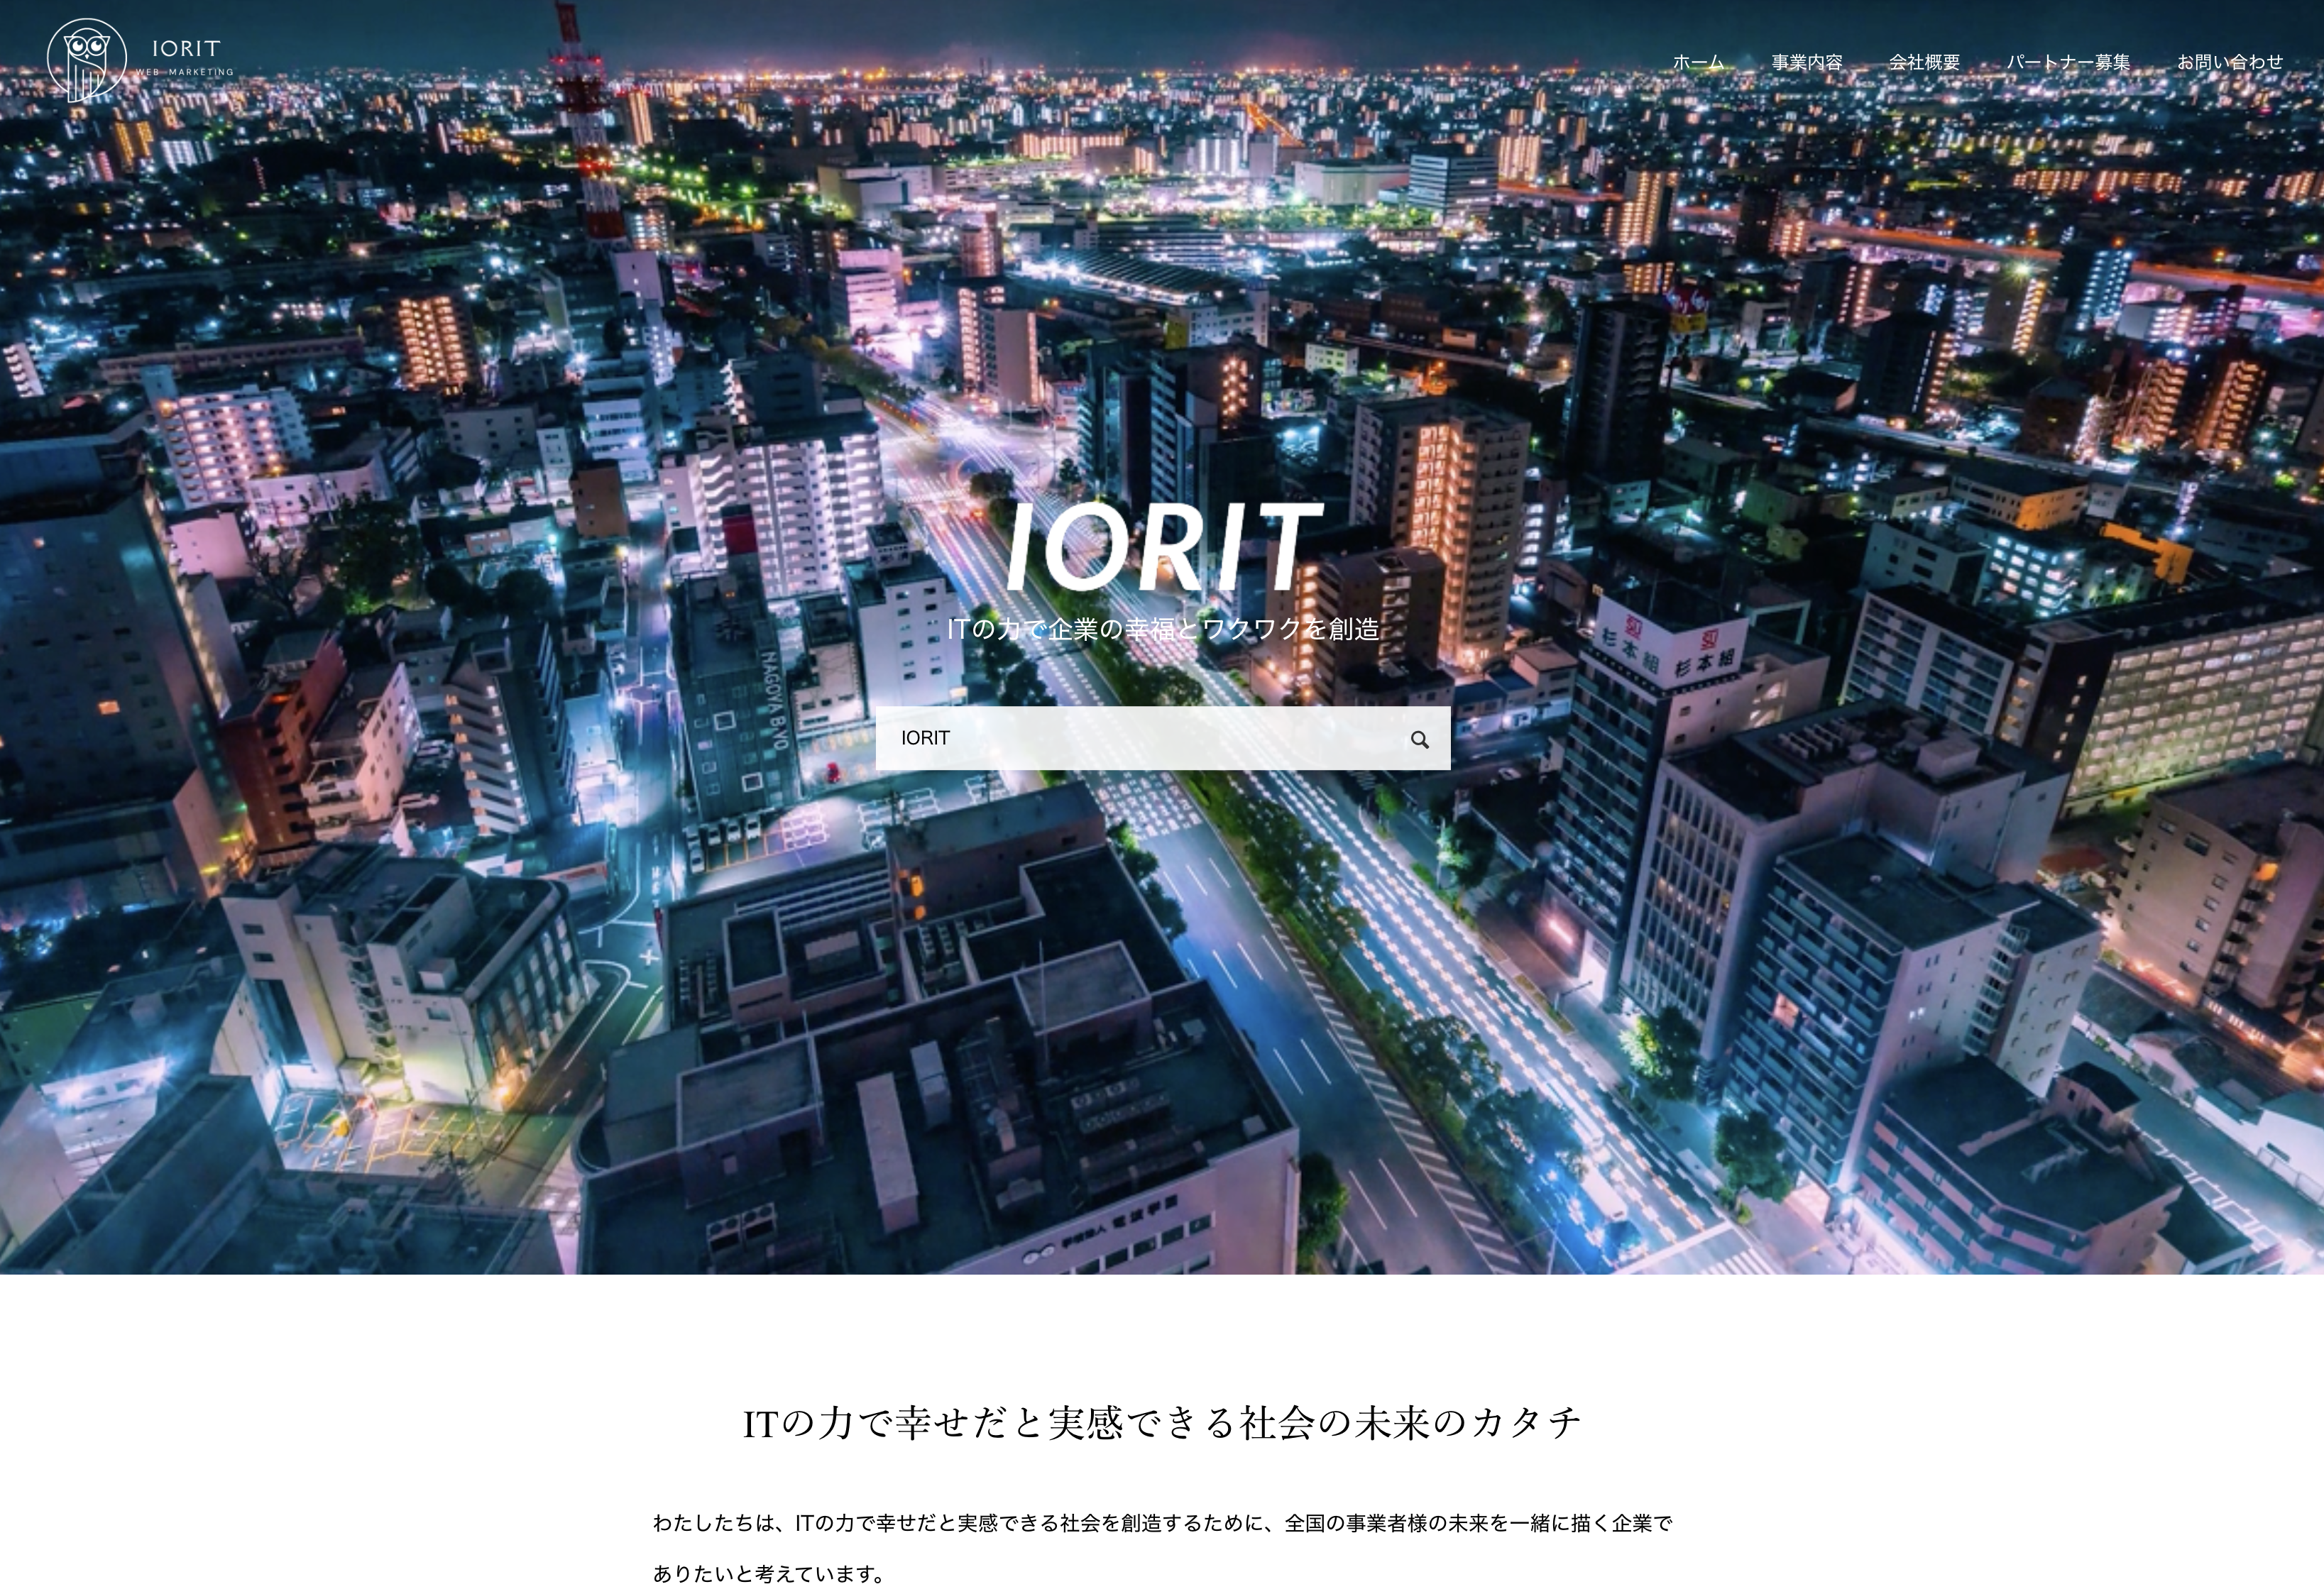 株式会社IORITの株式会社IORIT:データ入力・集計サービス